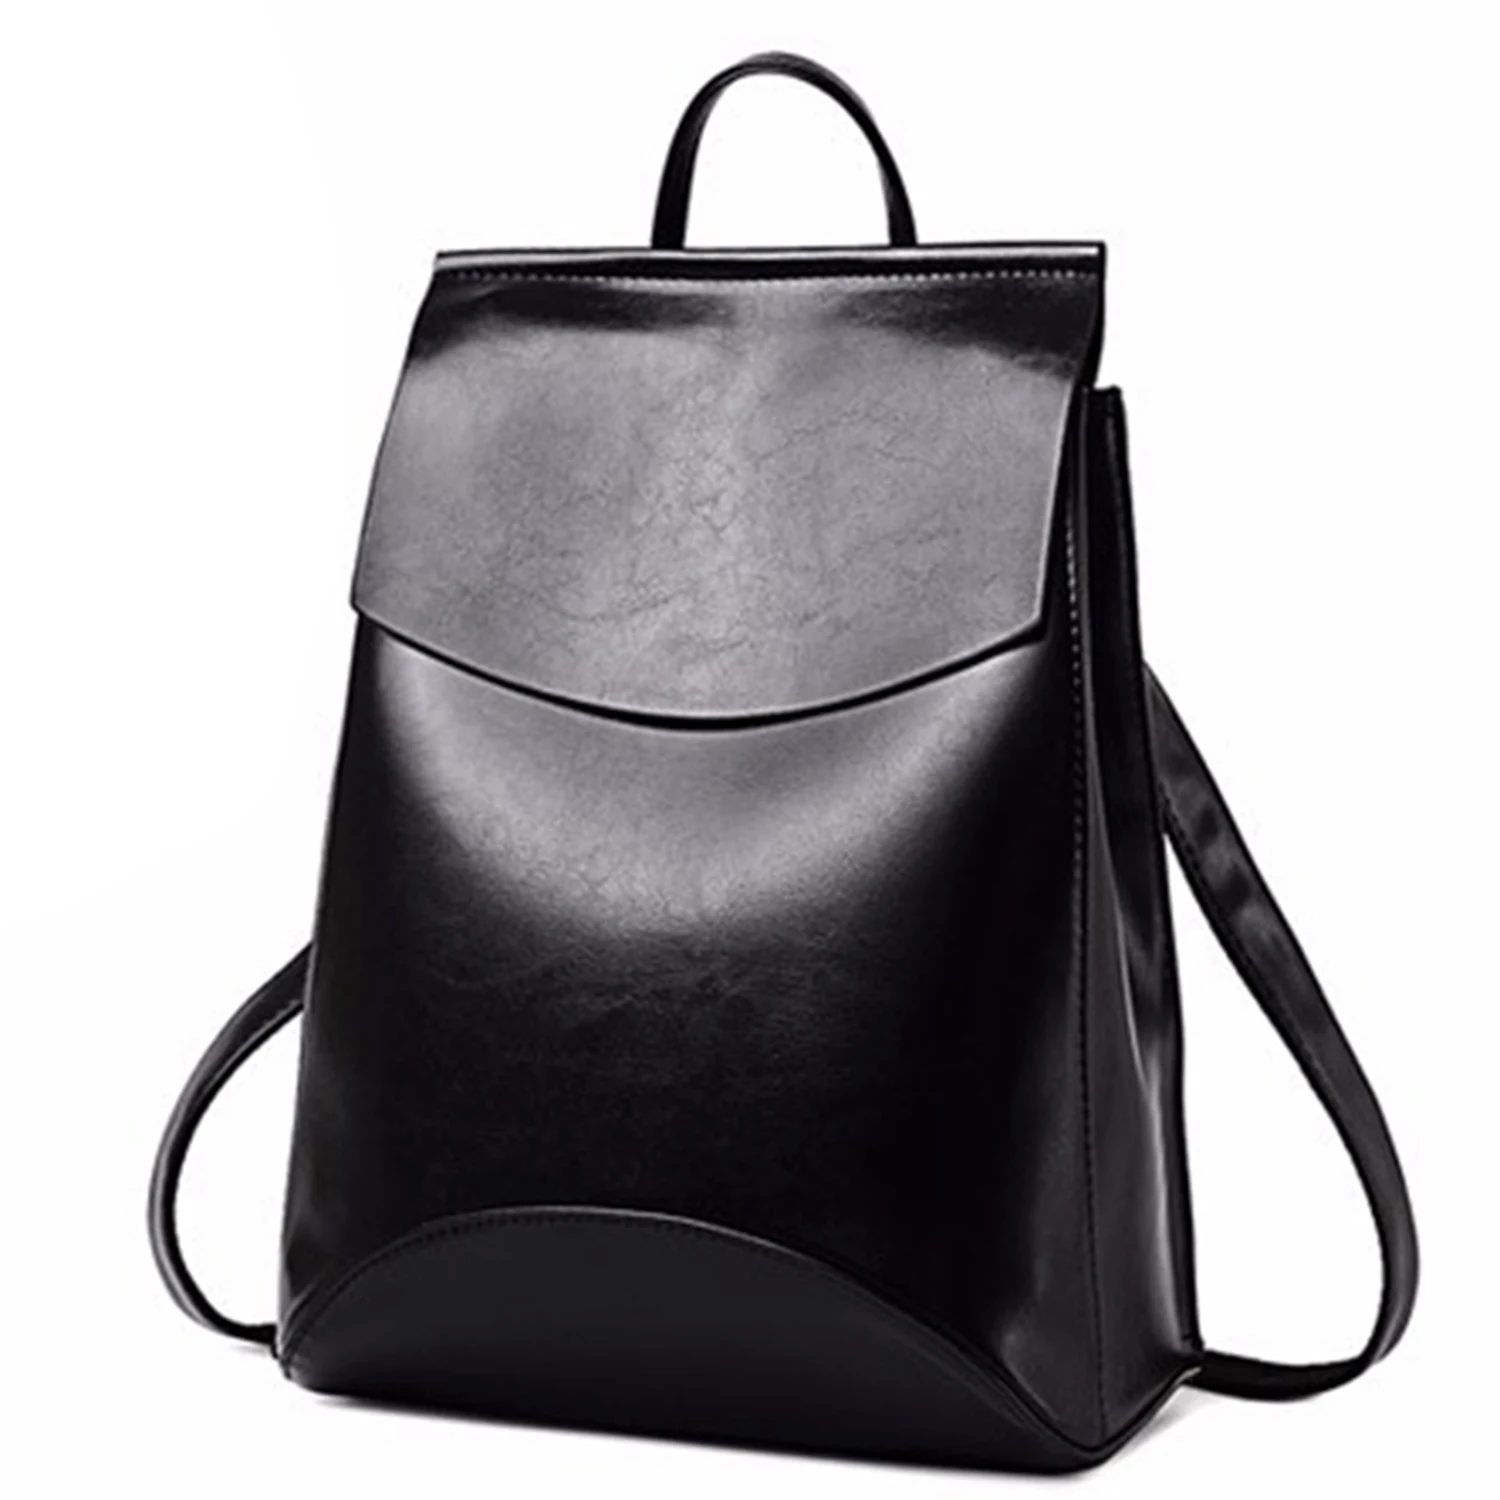 Модный кожаный рюкзак для девочек, школьная сумка на одно плечо черного цвета